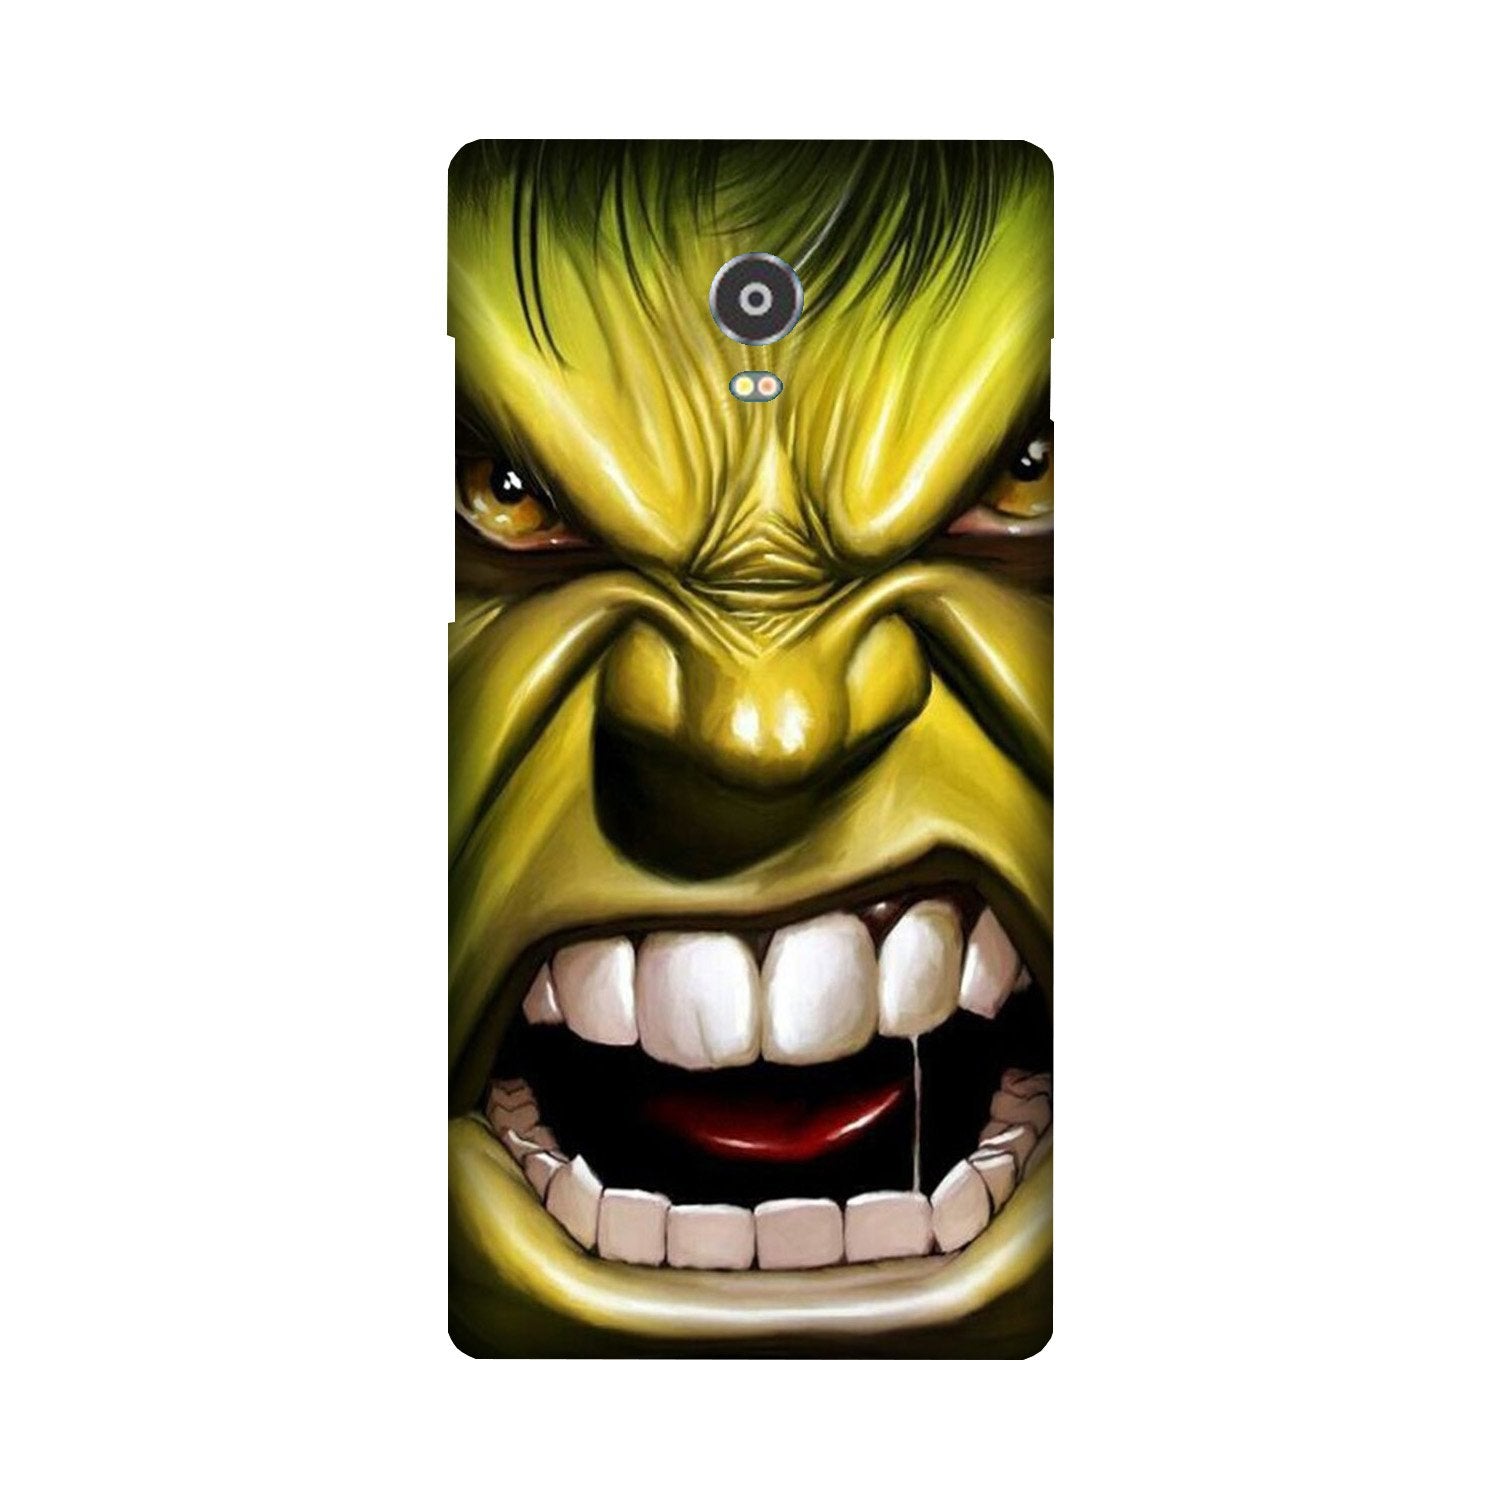 Hulk Superhero Case for Lenovo Vibe P1(Design - 121)